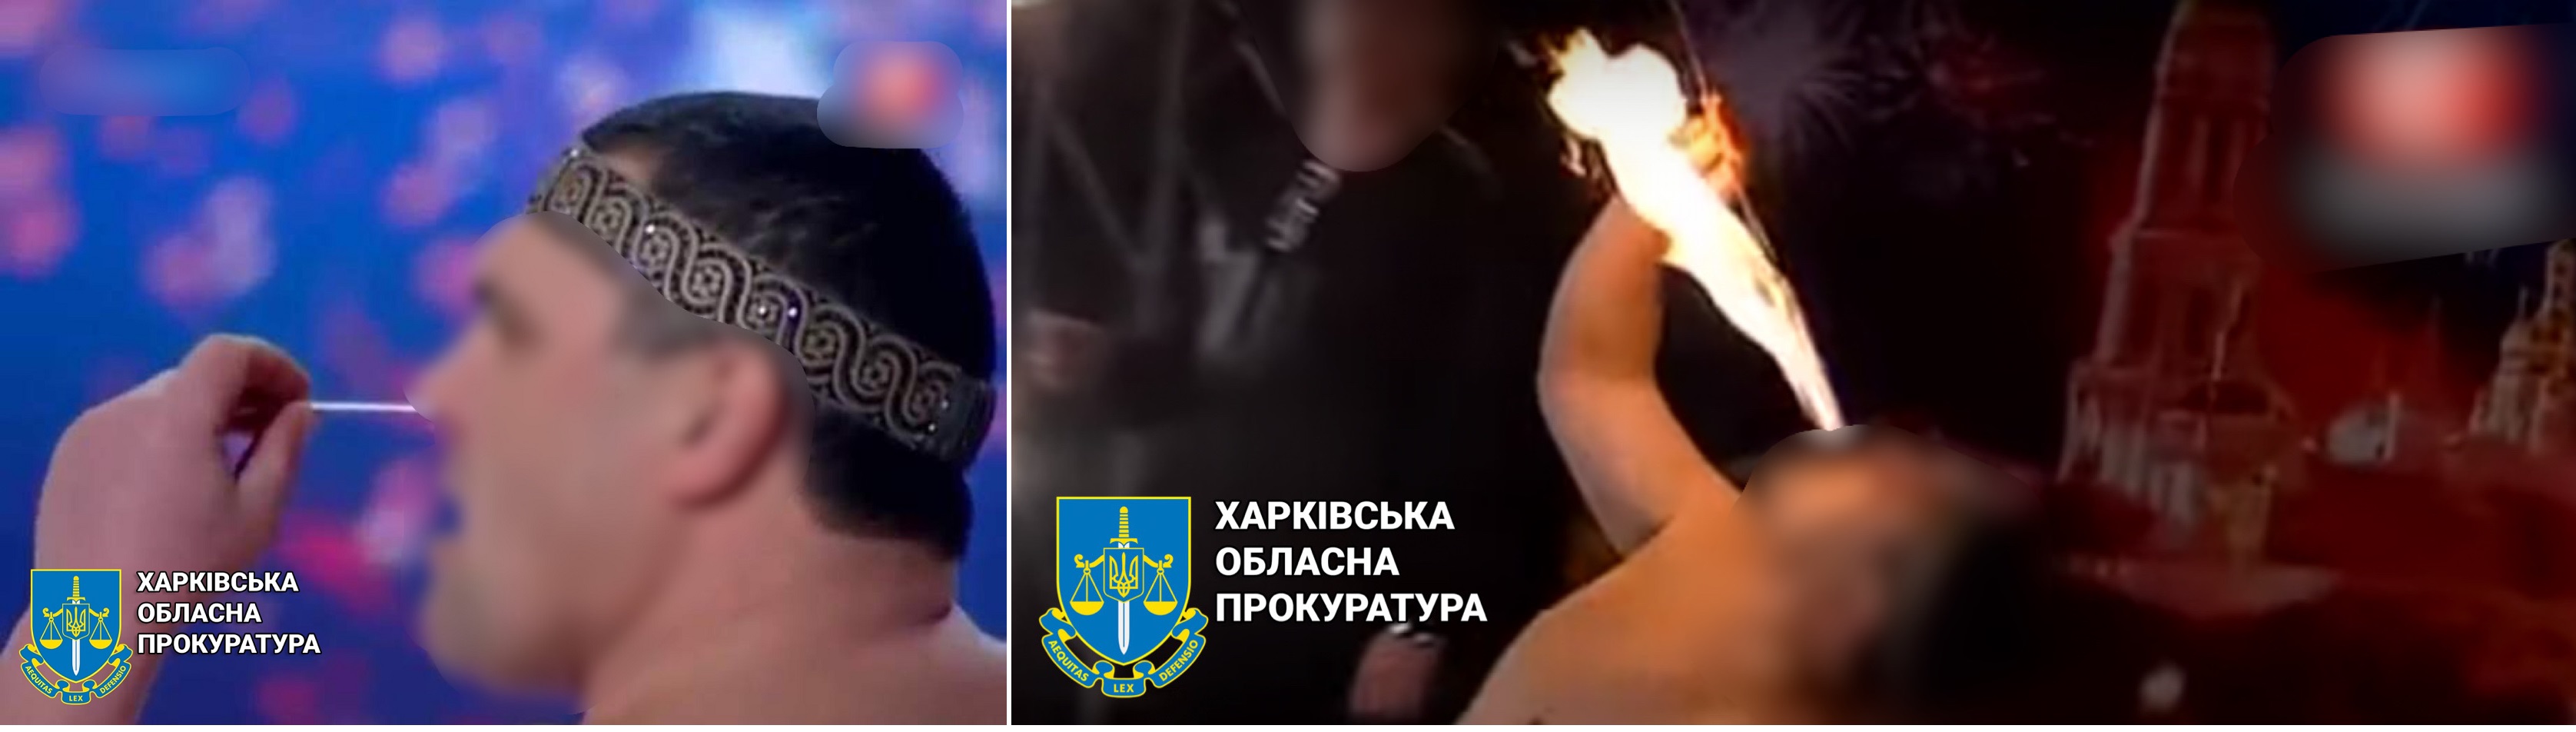 Учасника шоу "Україна має талант", який засовував собі у ніс цвяхи та ковтав факели, викрили на зраді